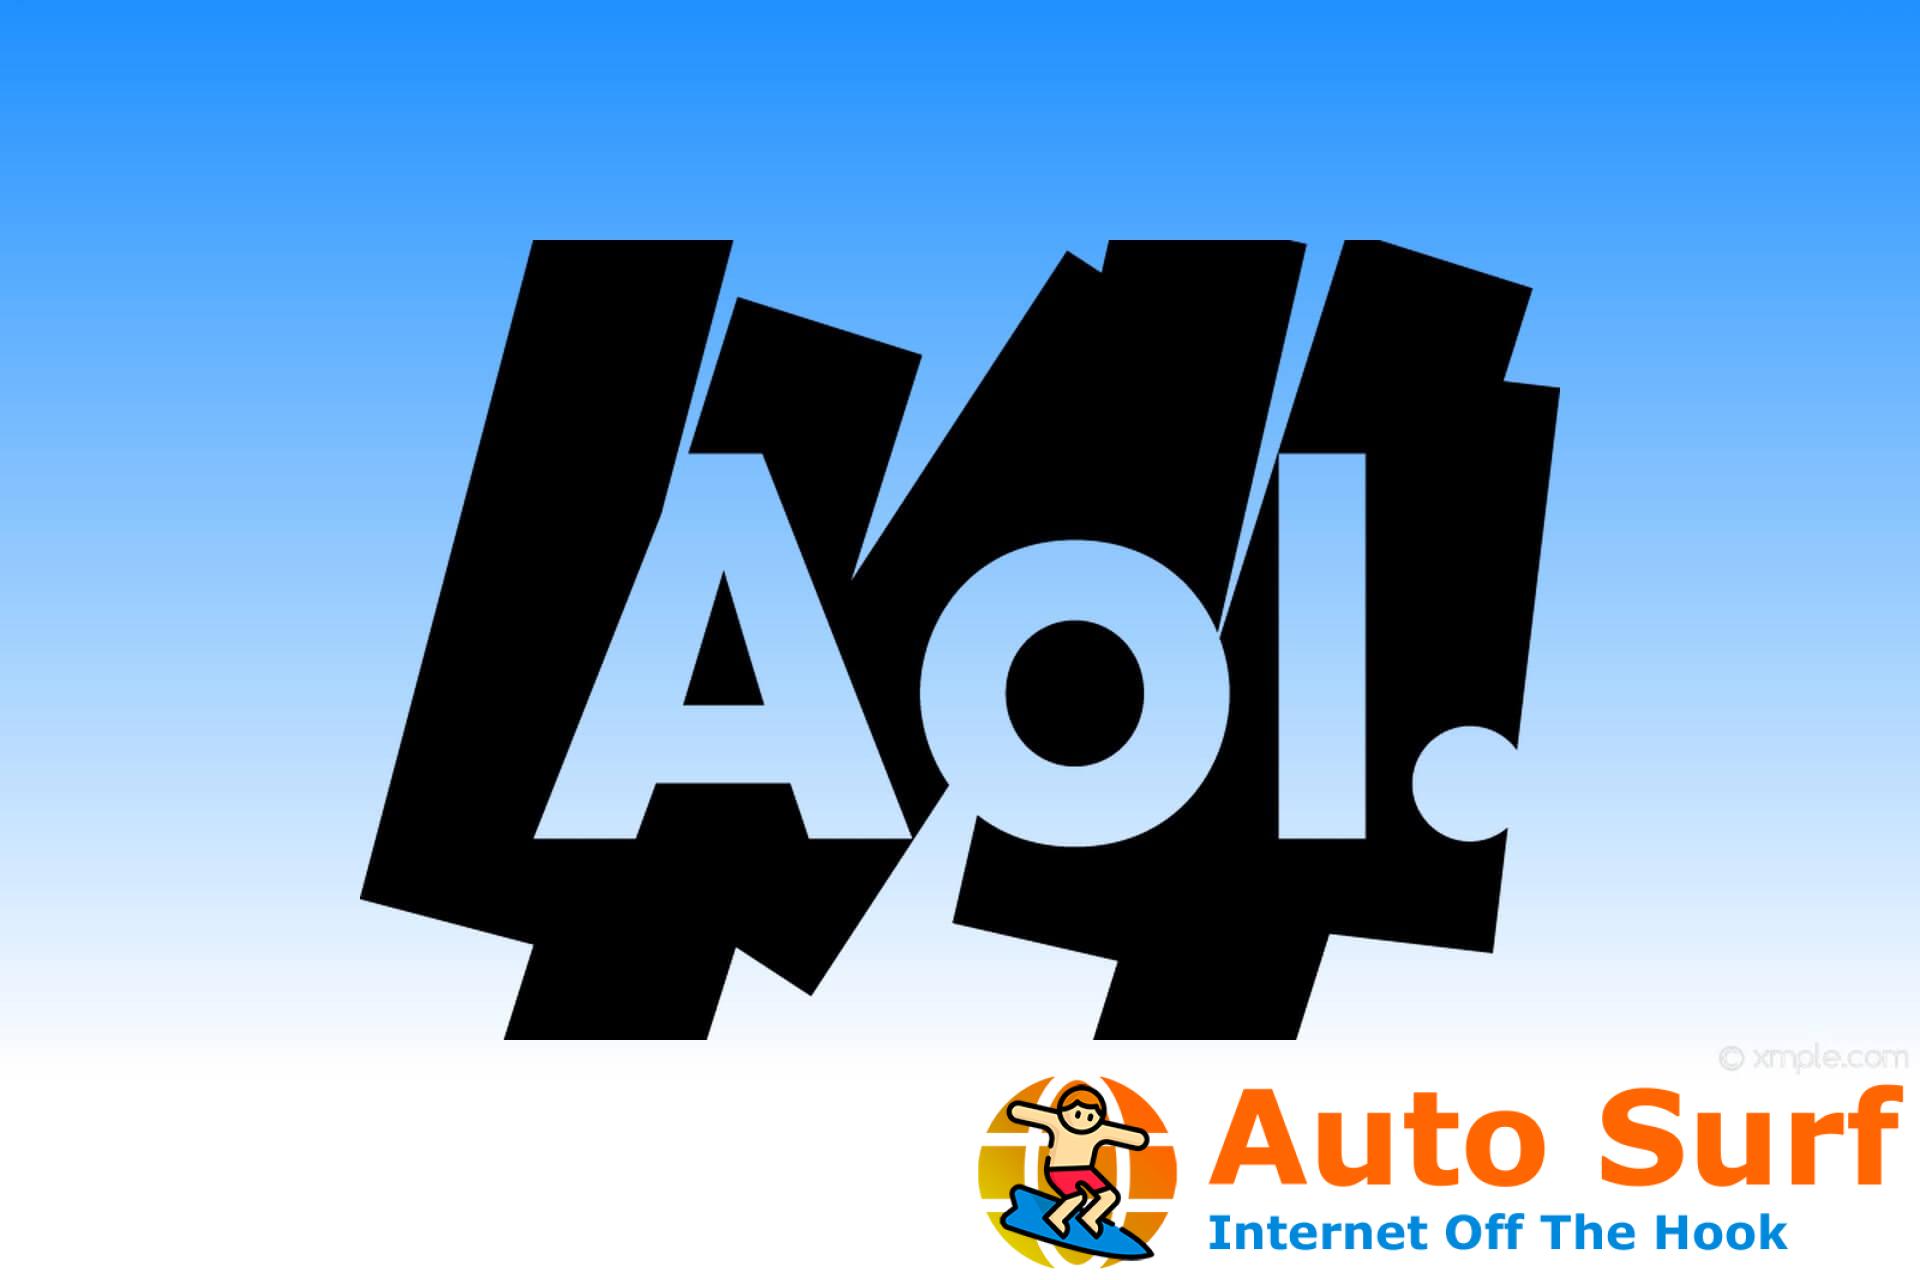 ¿El correo de AOL no muestra imágenes? Pruebe estas sencillas soluciones